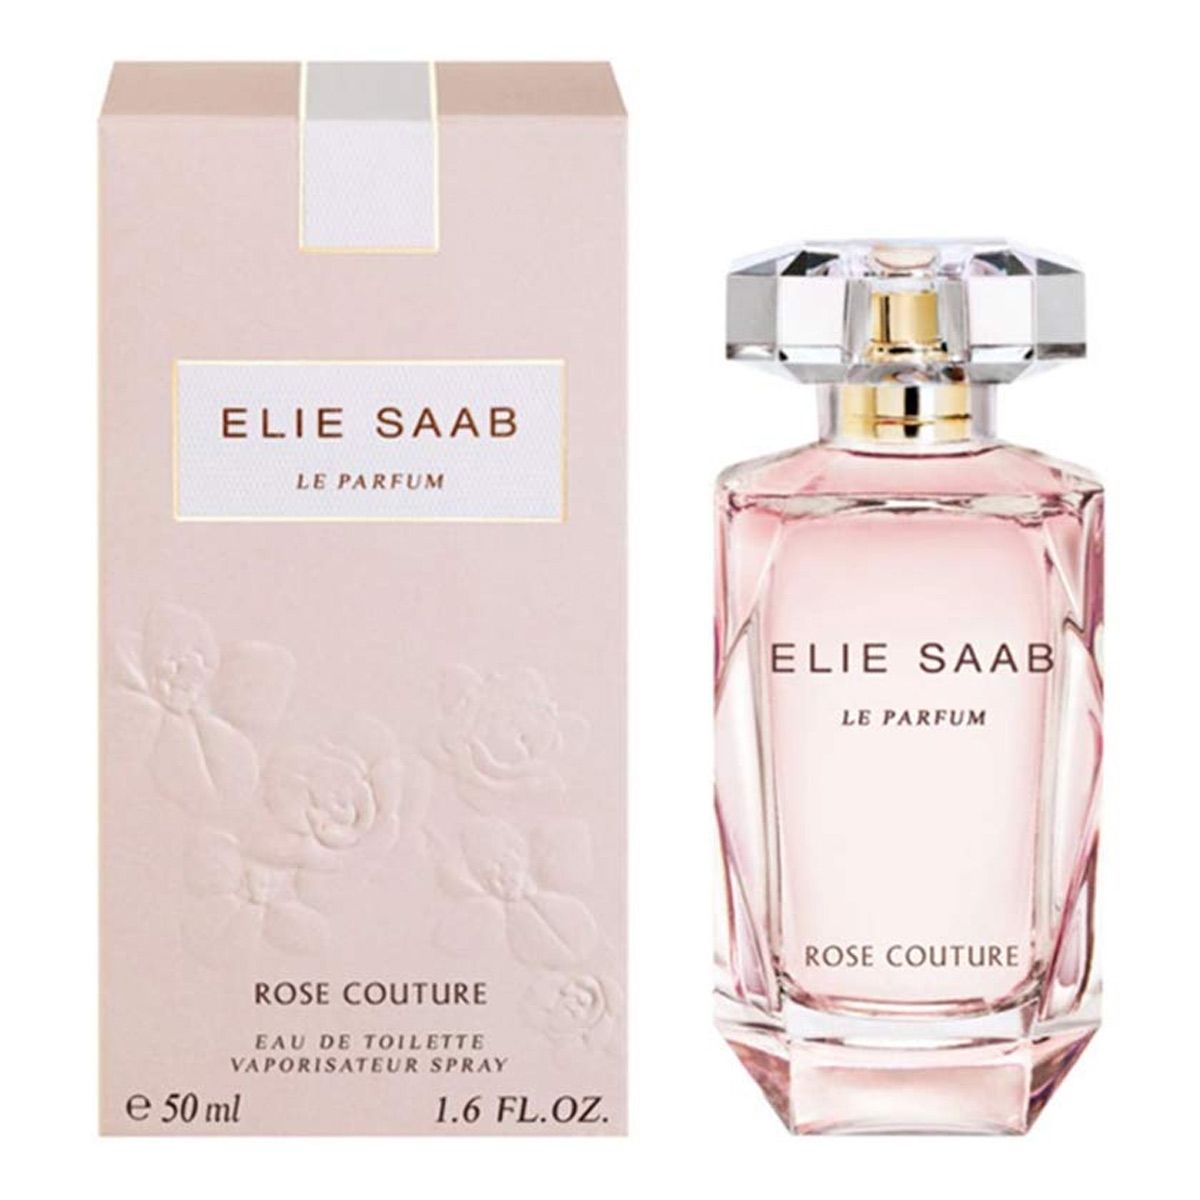  Elie Saab Le Parfum Rose Couture 